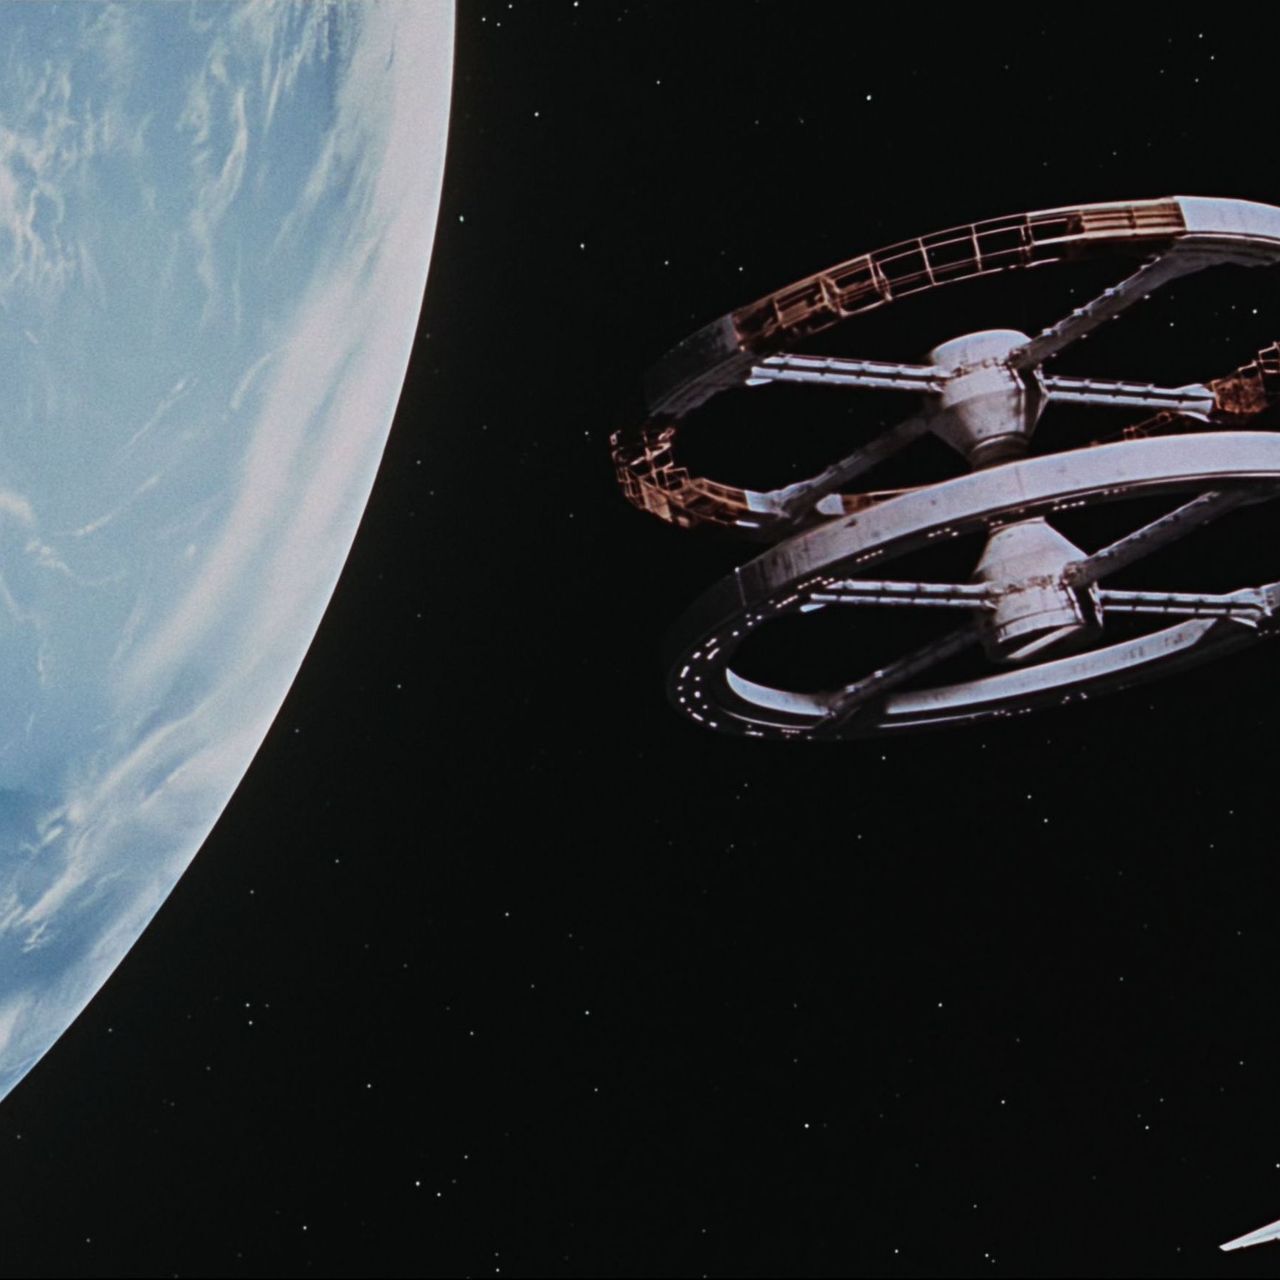 Quale migliore visione del futuro che ci fu rubato se non quella di Stanley Kubrick nel capolavoro cinematografico “2001 A Space Odissey”?